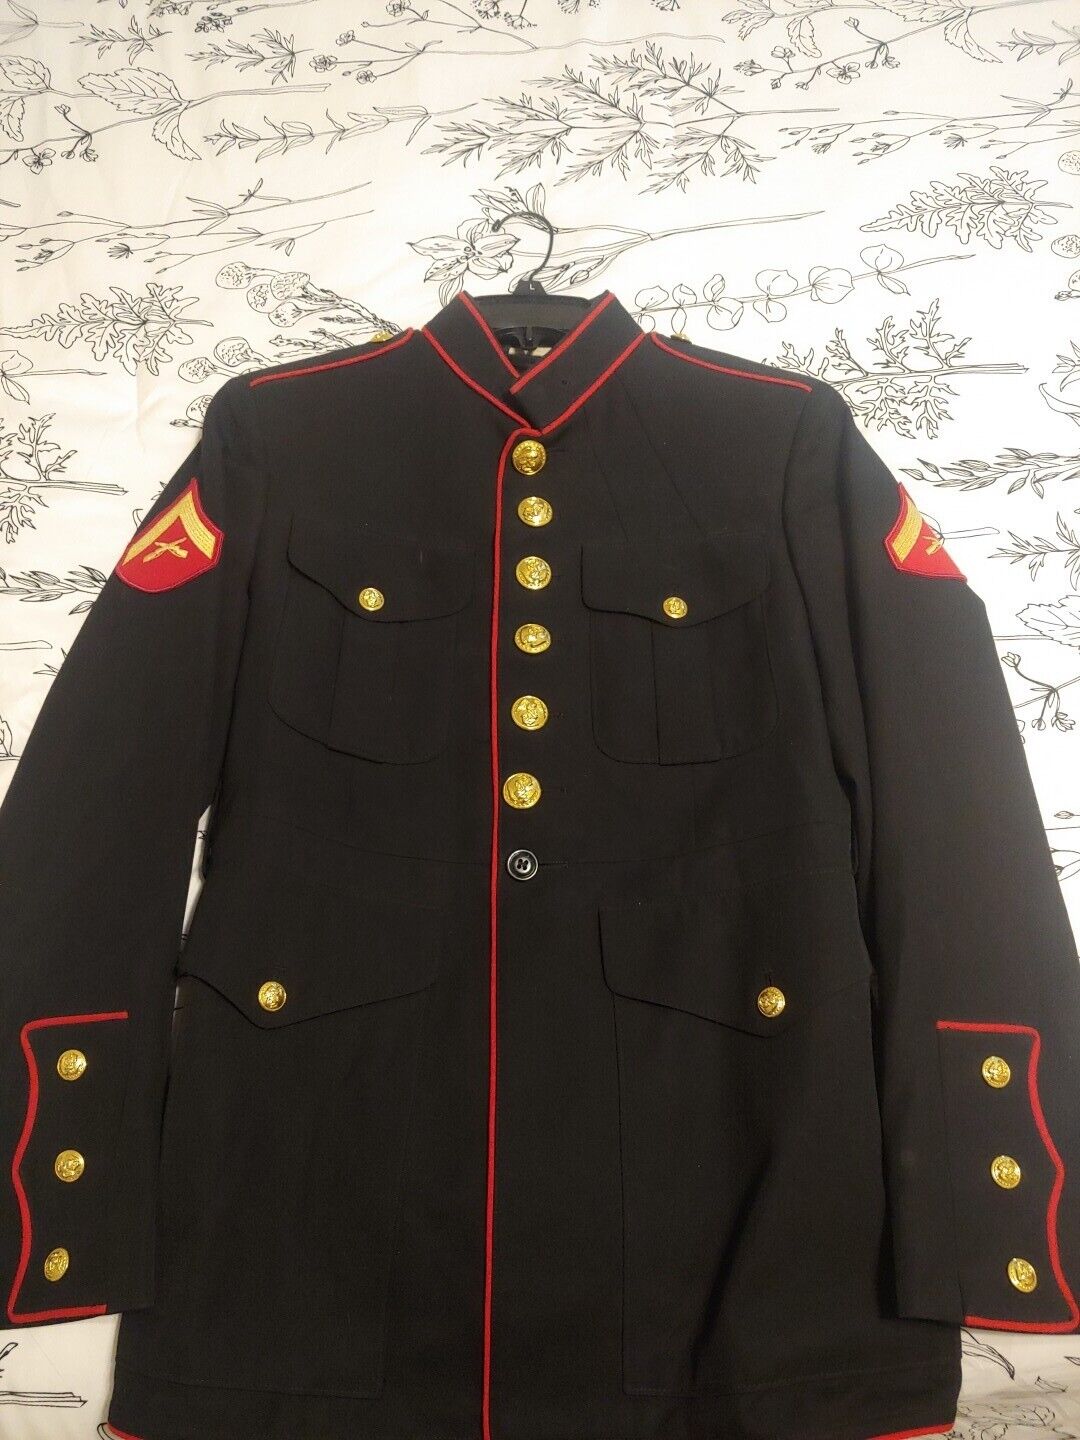 US Marines USMC Enlisted Dress Blue Male Jacket Coat Size 39 Short